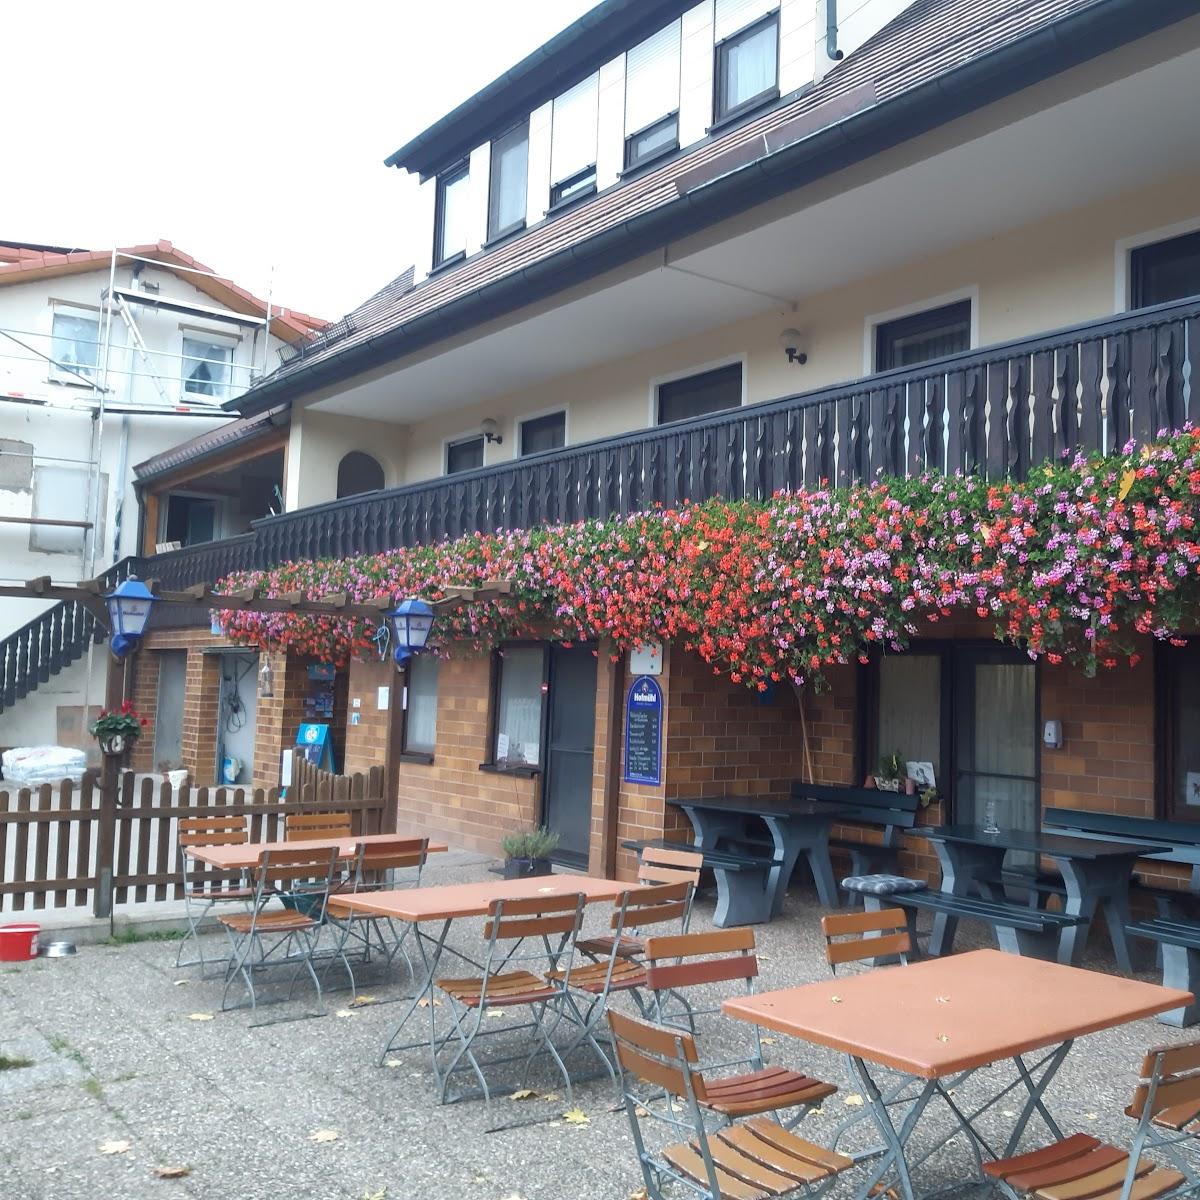 Restaurant "Reiterhof Steinhof" in Neuendettelsau